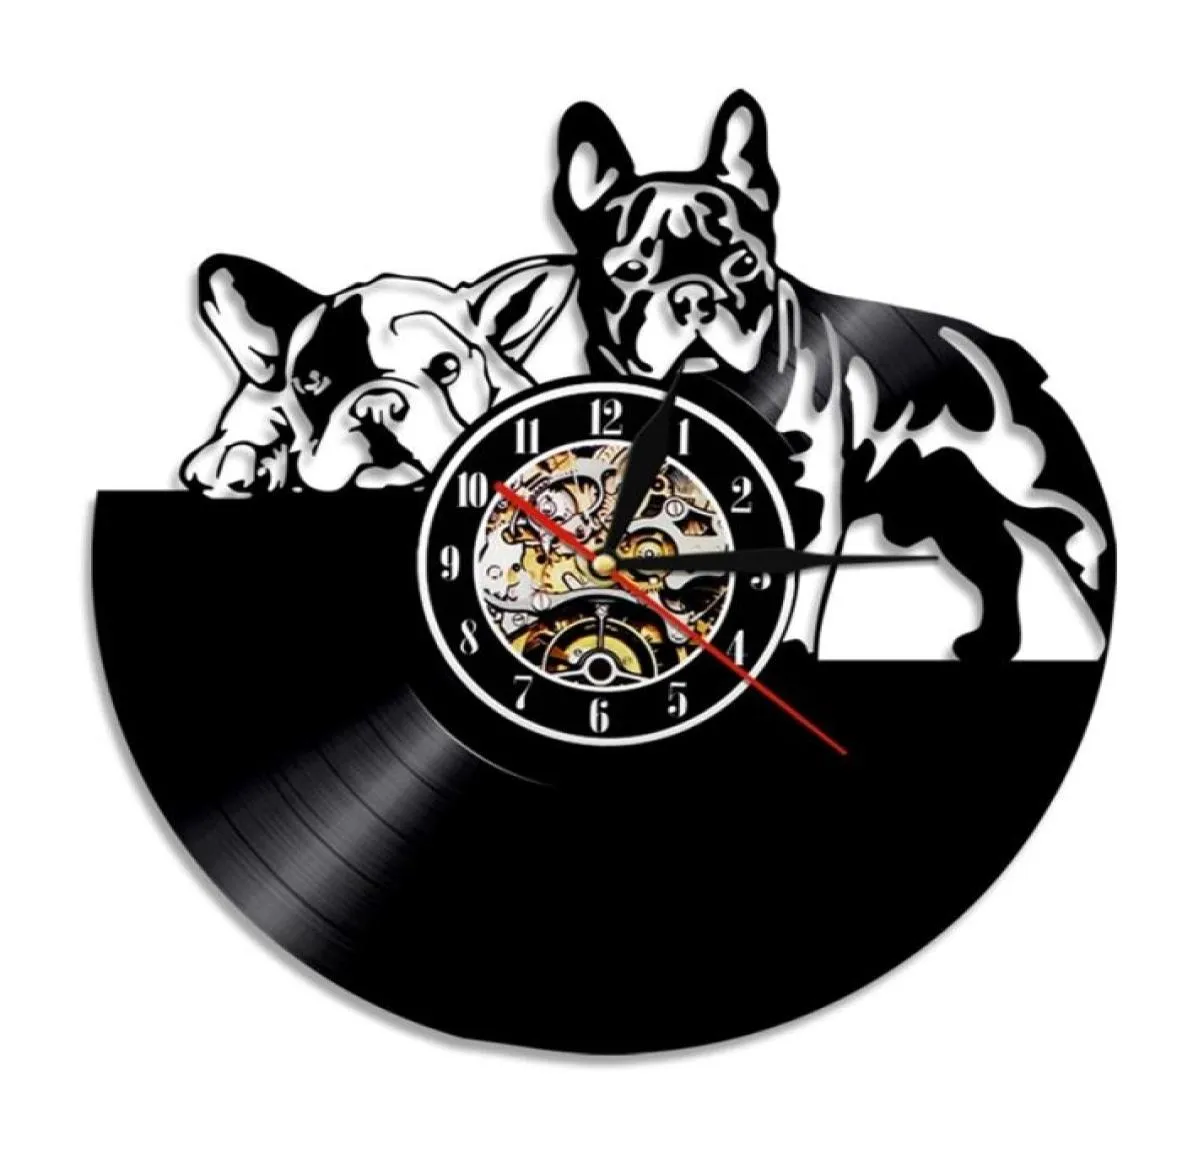 French Bulldog Record zegar ścienny Nowoczesny design zwierząt domowy dekoracje szczeniąt zegar ścienny Relogio de Parede Bulldog Lover Prezent 2012026368163